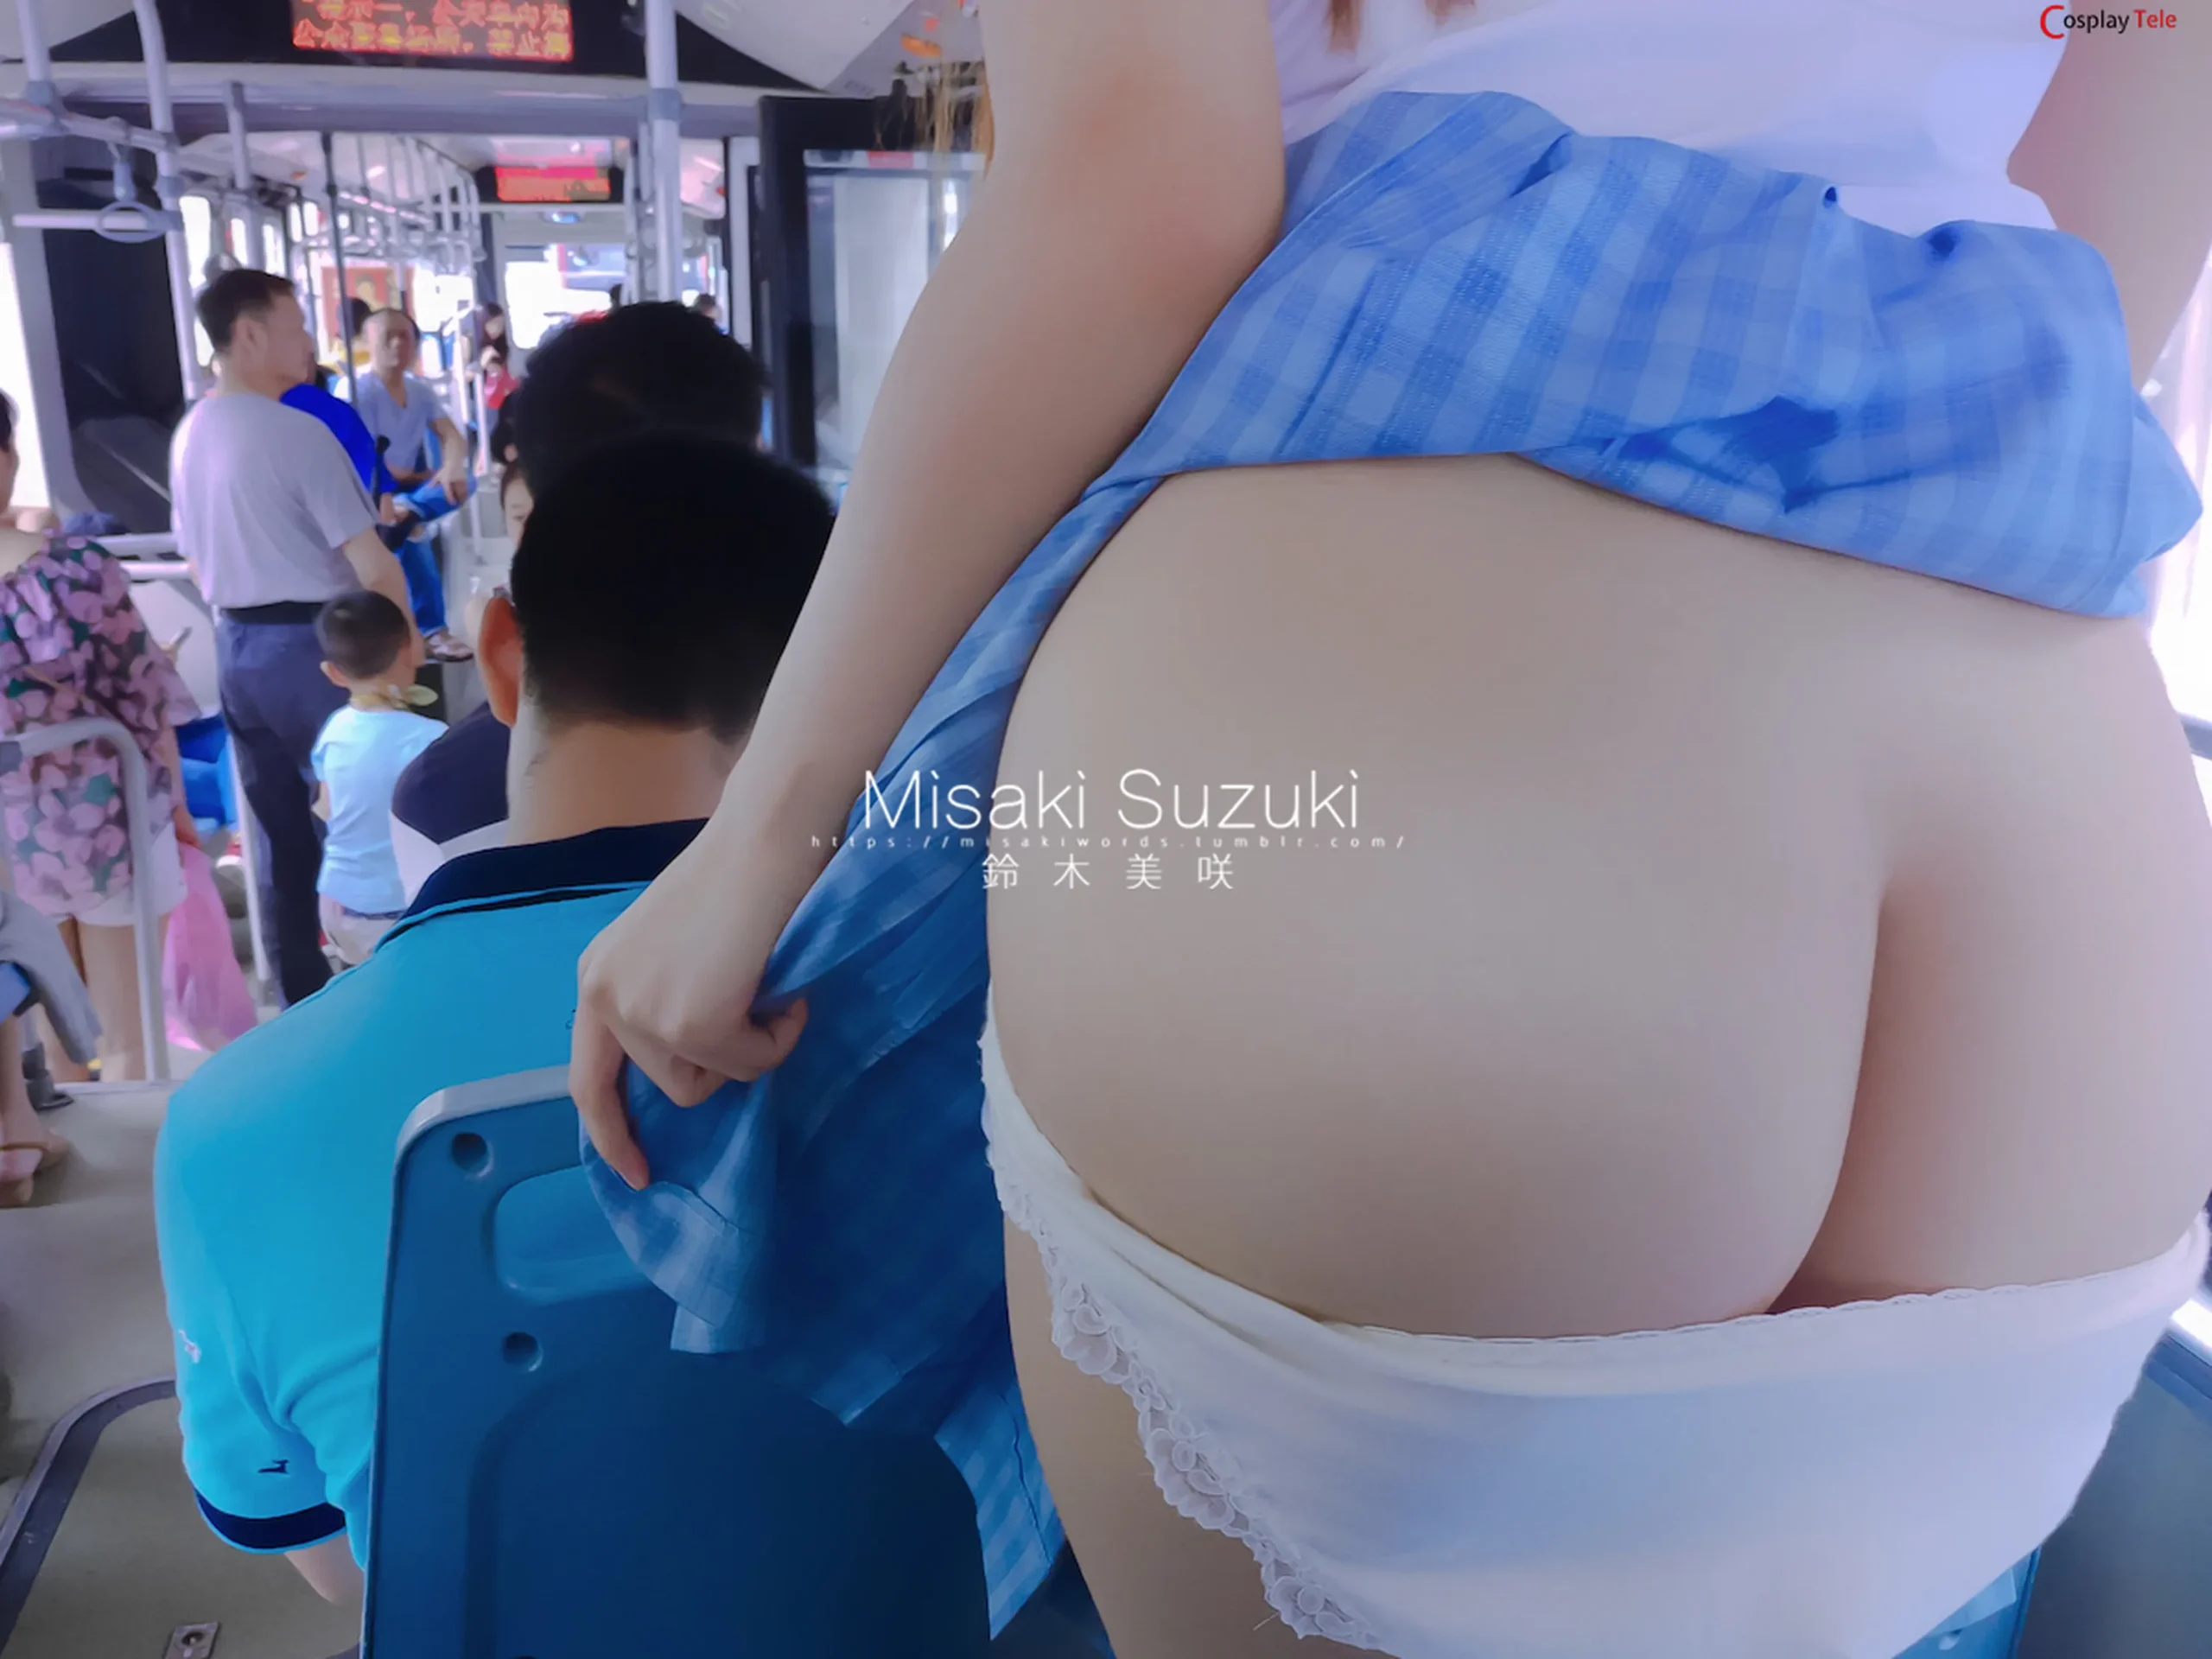 铃木美咲 (Misaki Suzuki) – Bus exposed “162 photos and 24 videos”